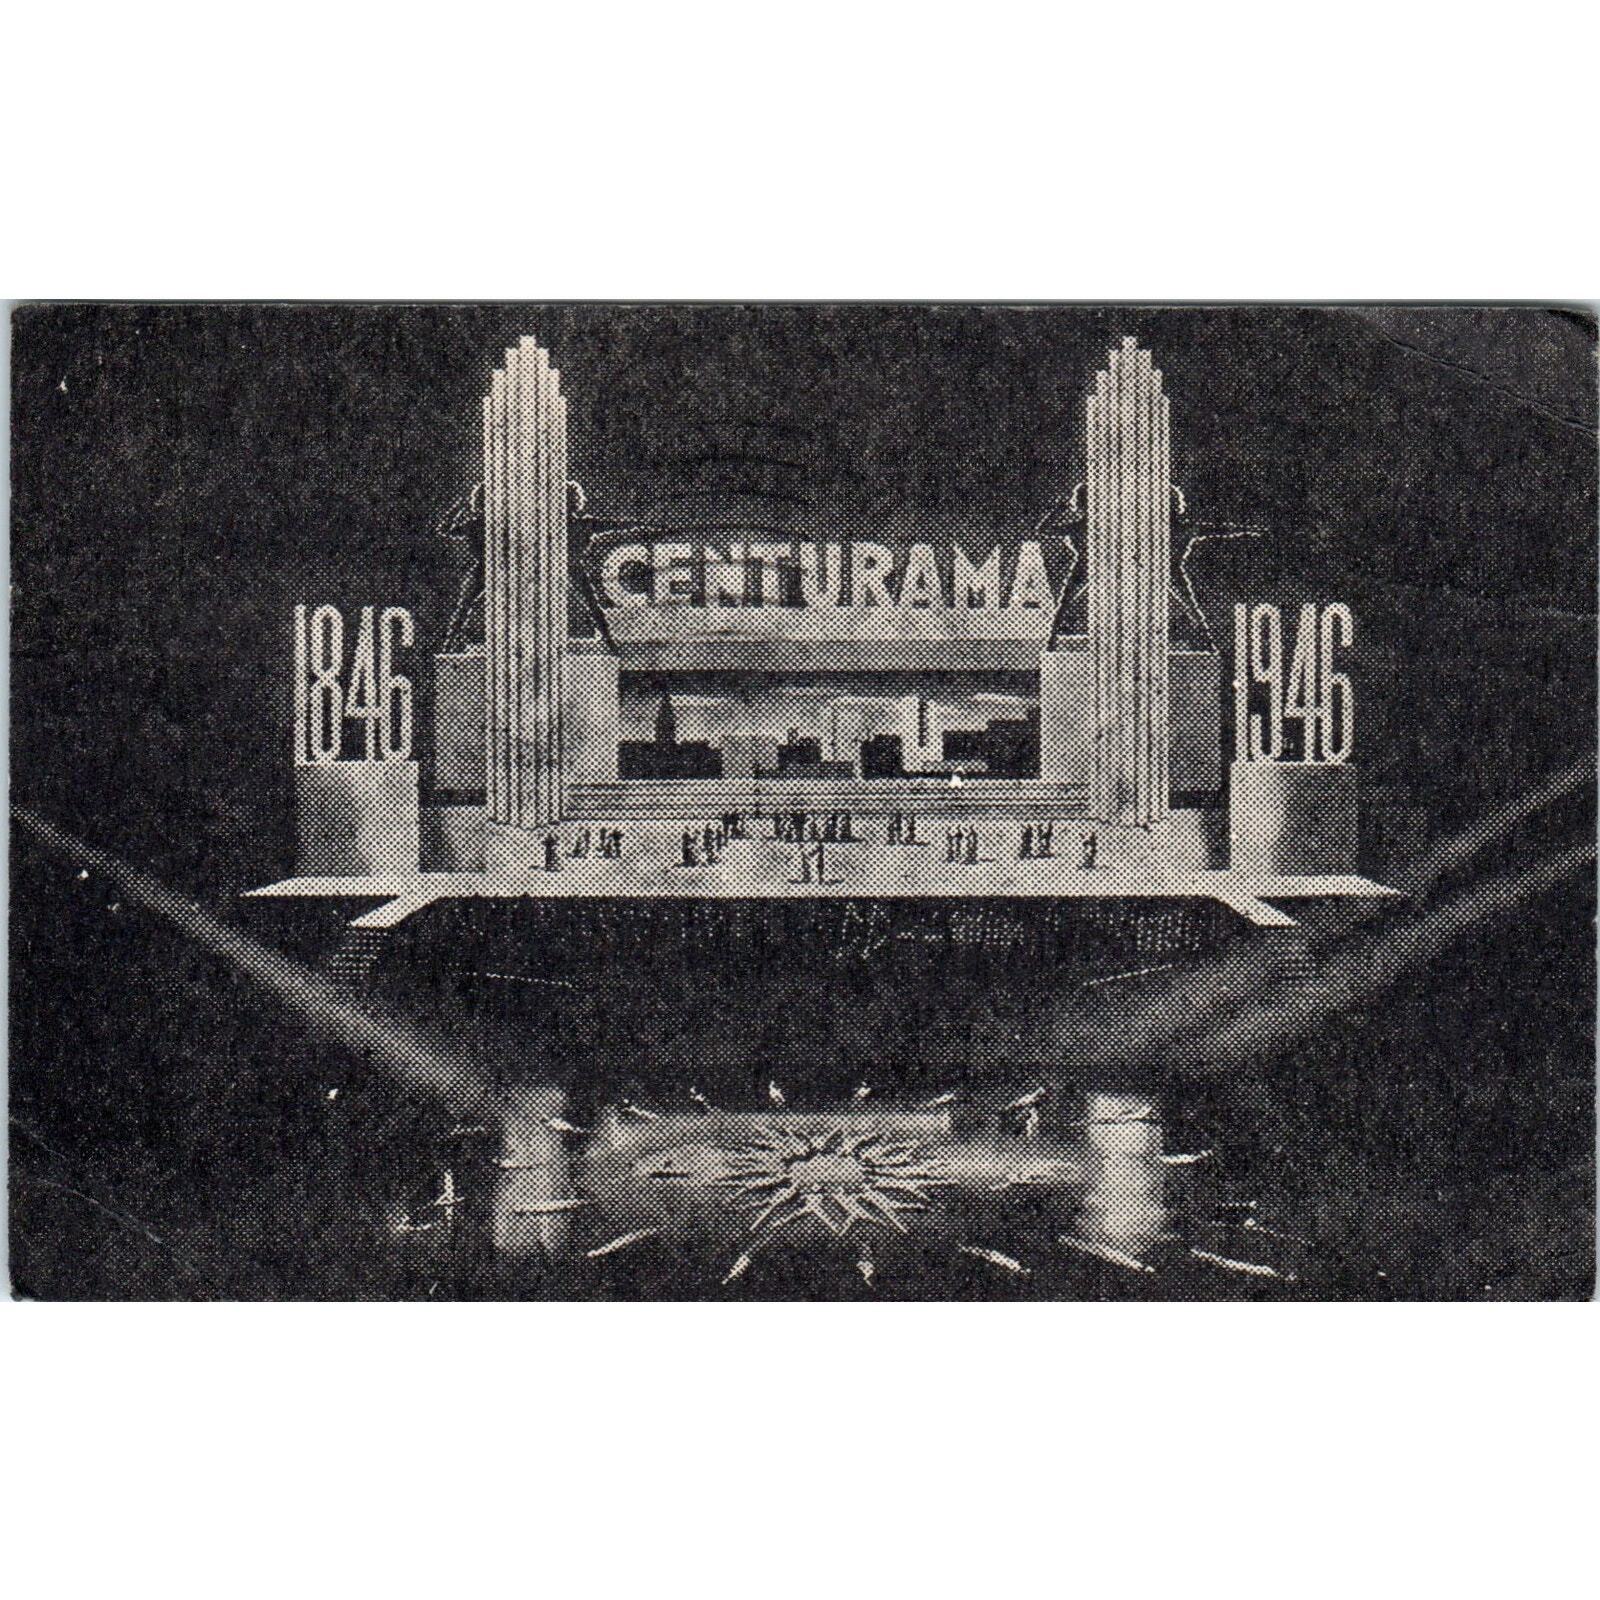 Milwaukee Centurama 1946 Original Postcard TJ9-P3